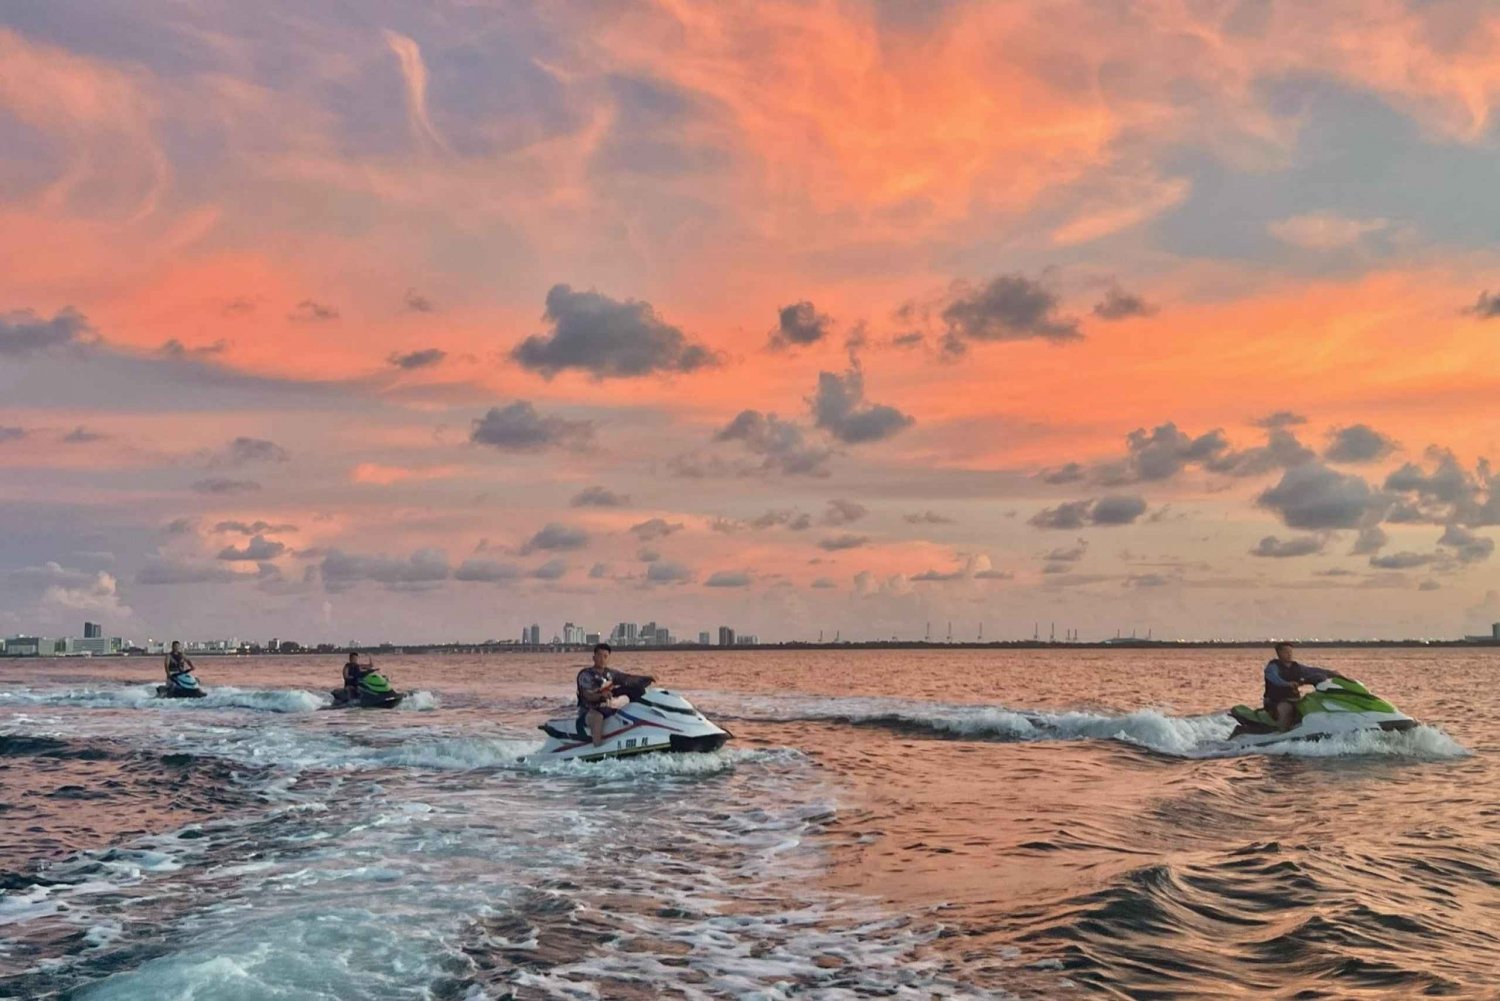 Miami Beach: Uthyrning av WaveRunner och båttur